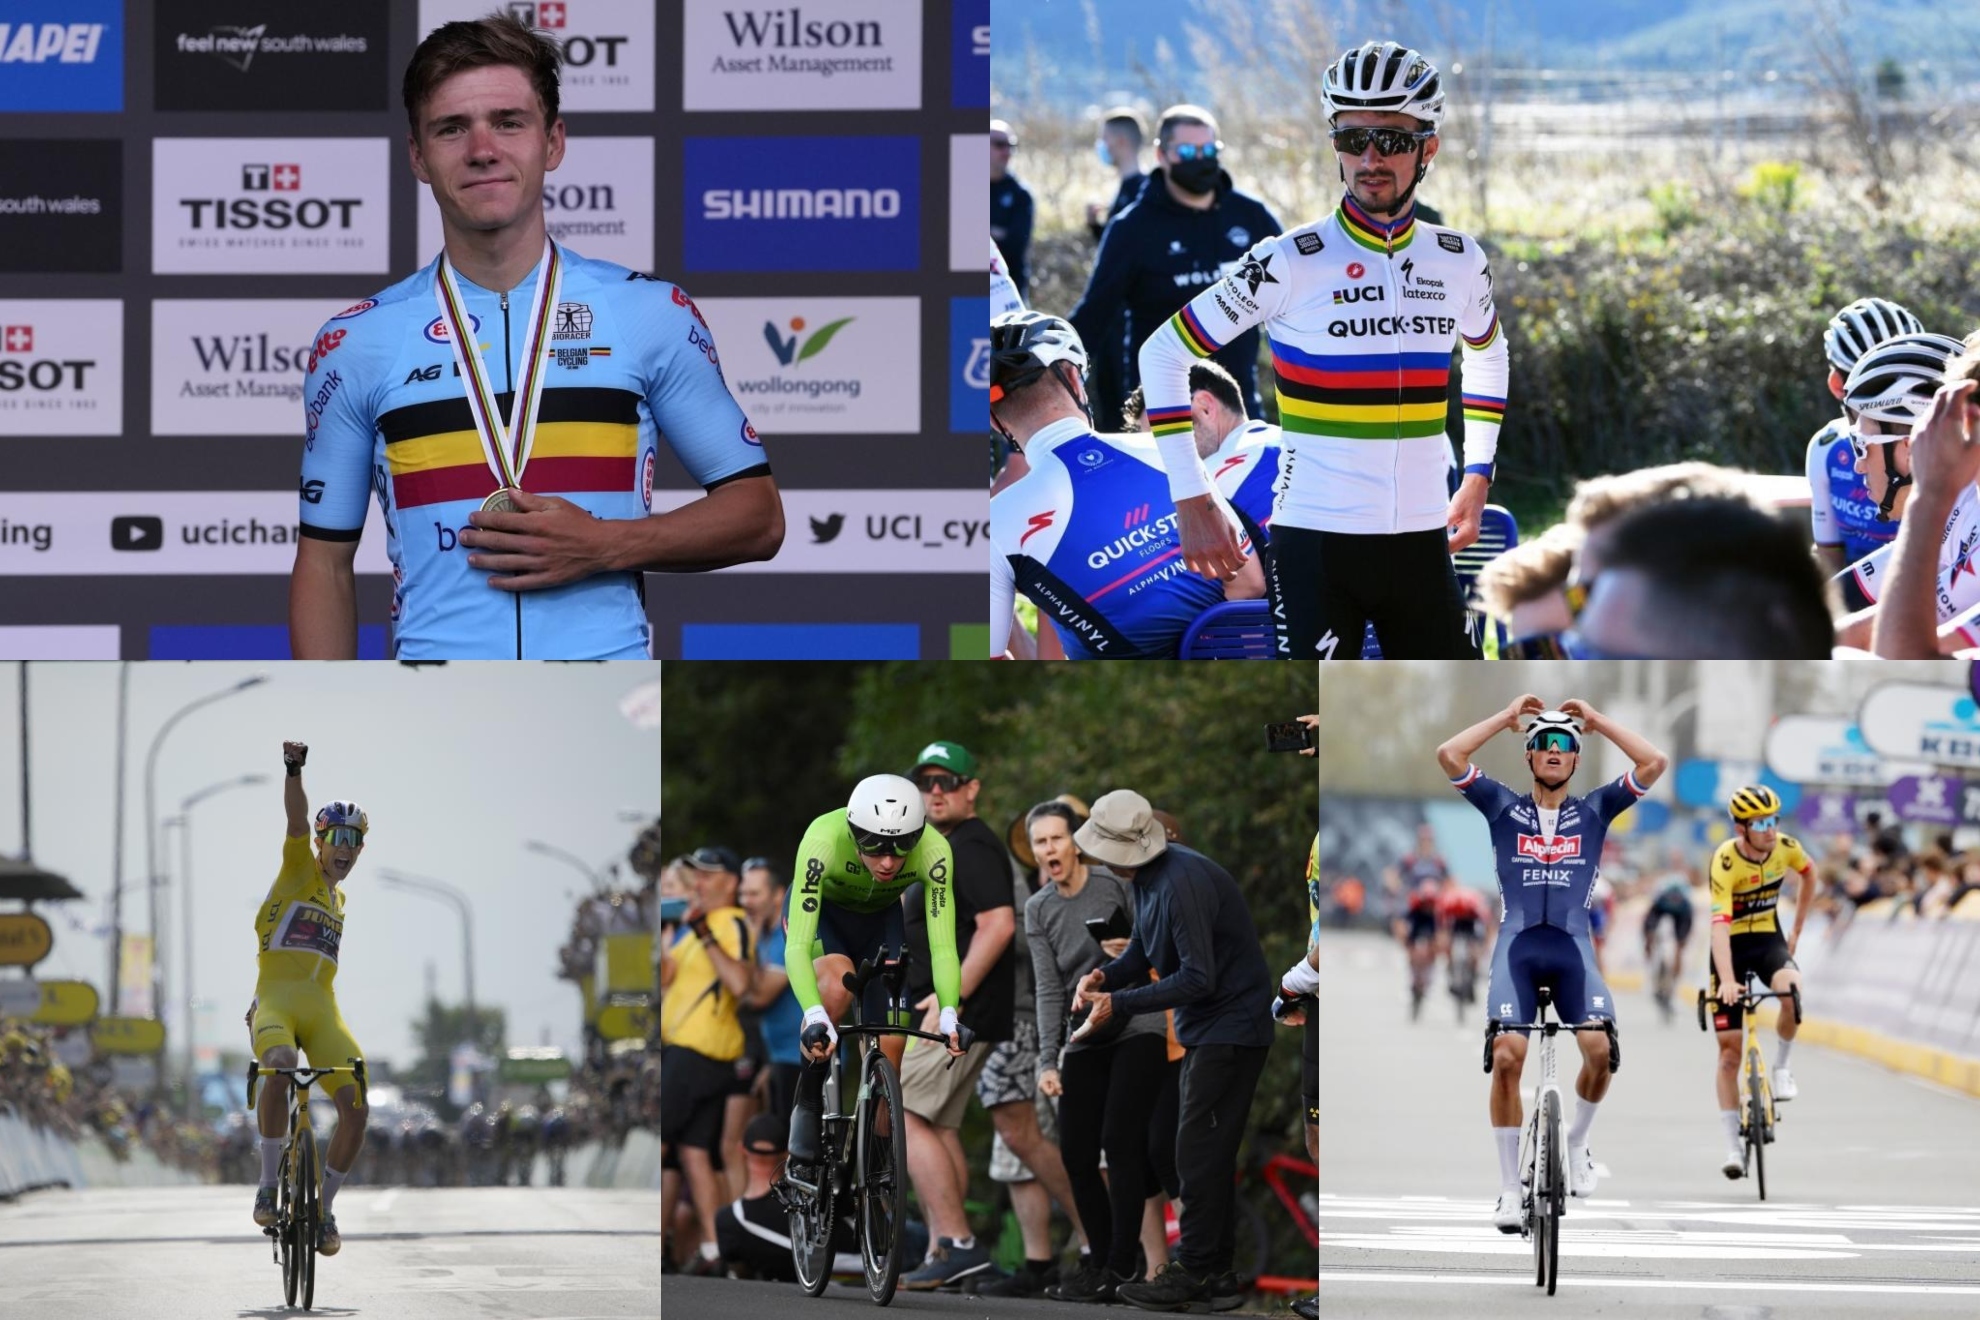 Quiénes son los favoritos para ganar el Mundial de Ciclismo 2022.MARCA